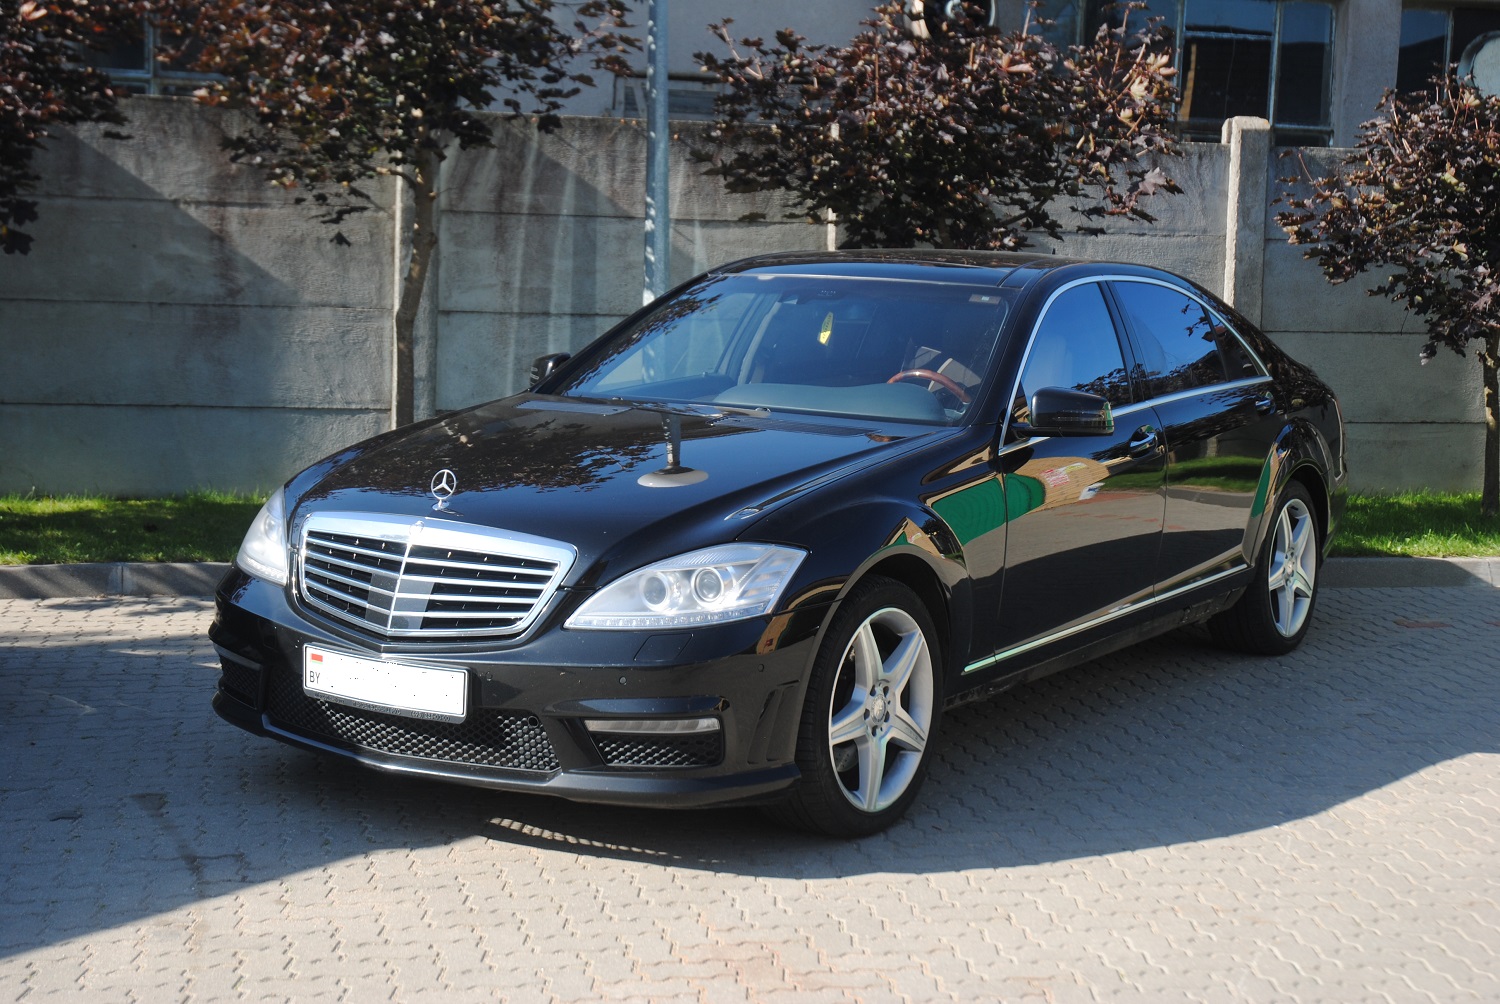 Mercedes użyty do&nbsp;przestępstwa /fot. POSG/